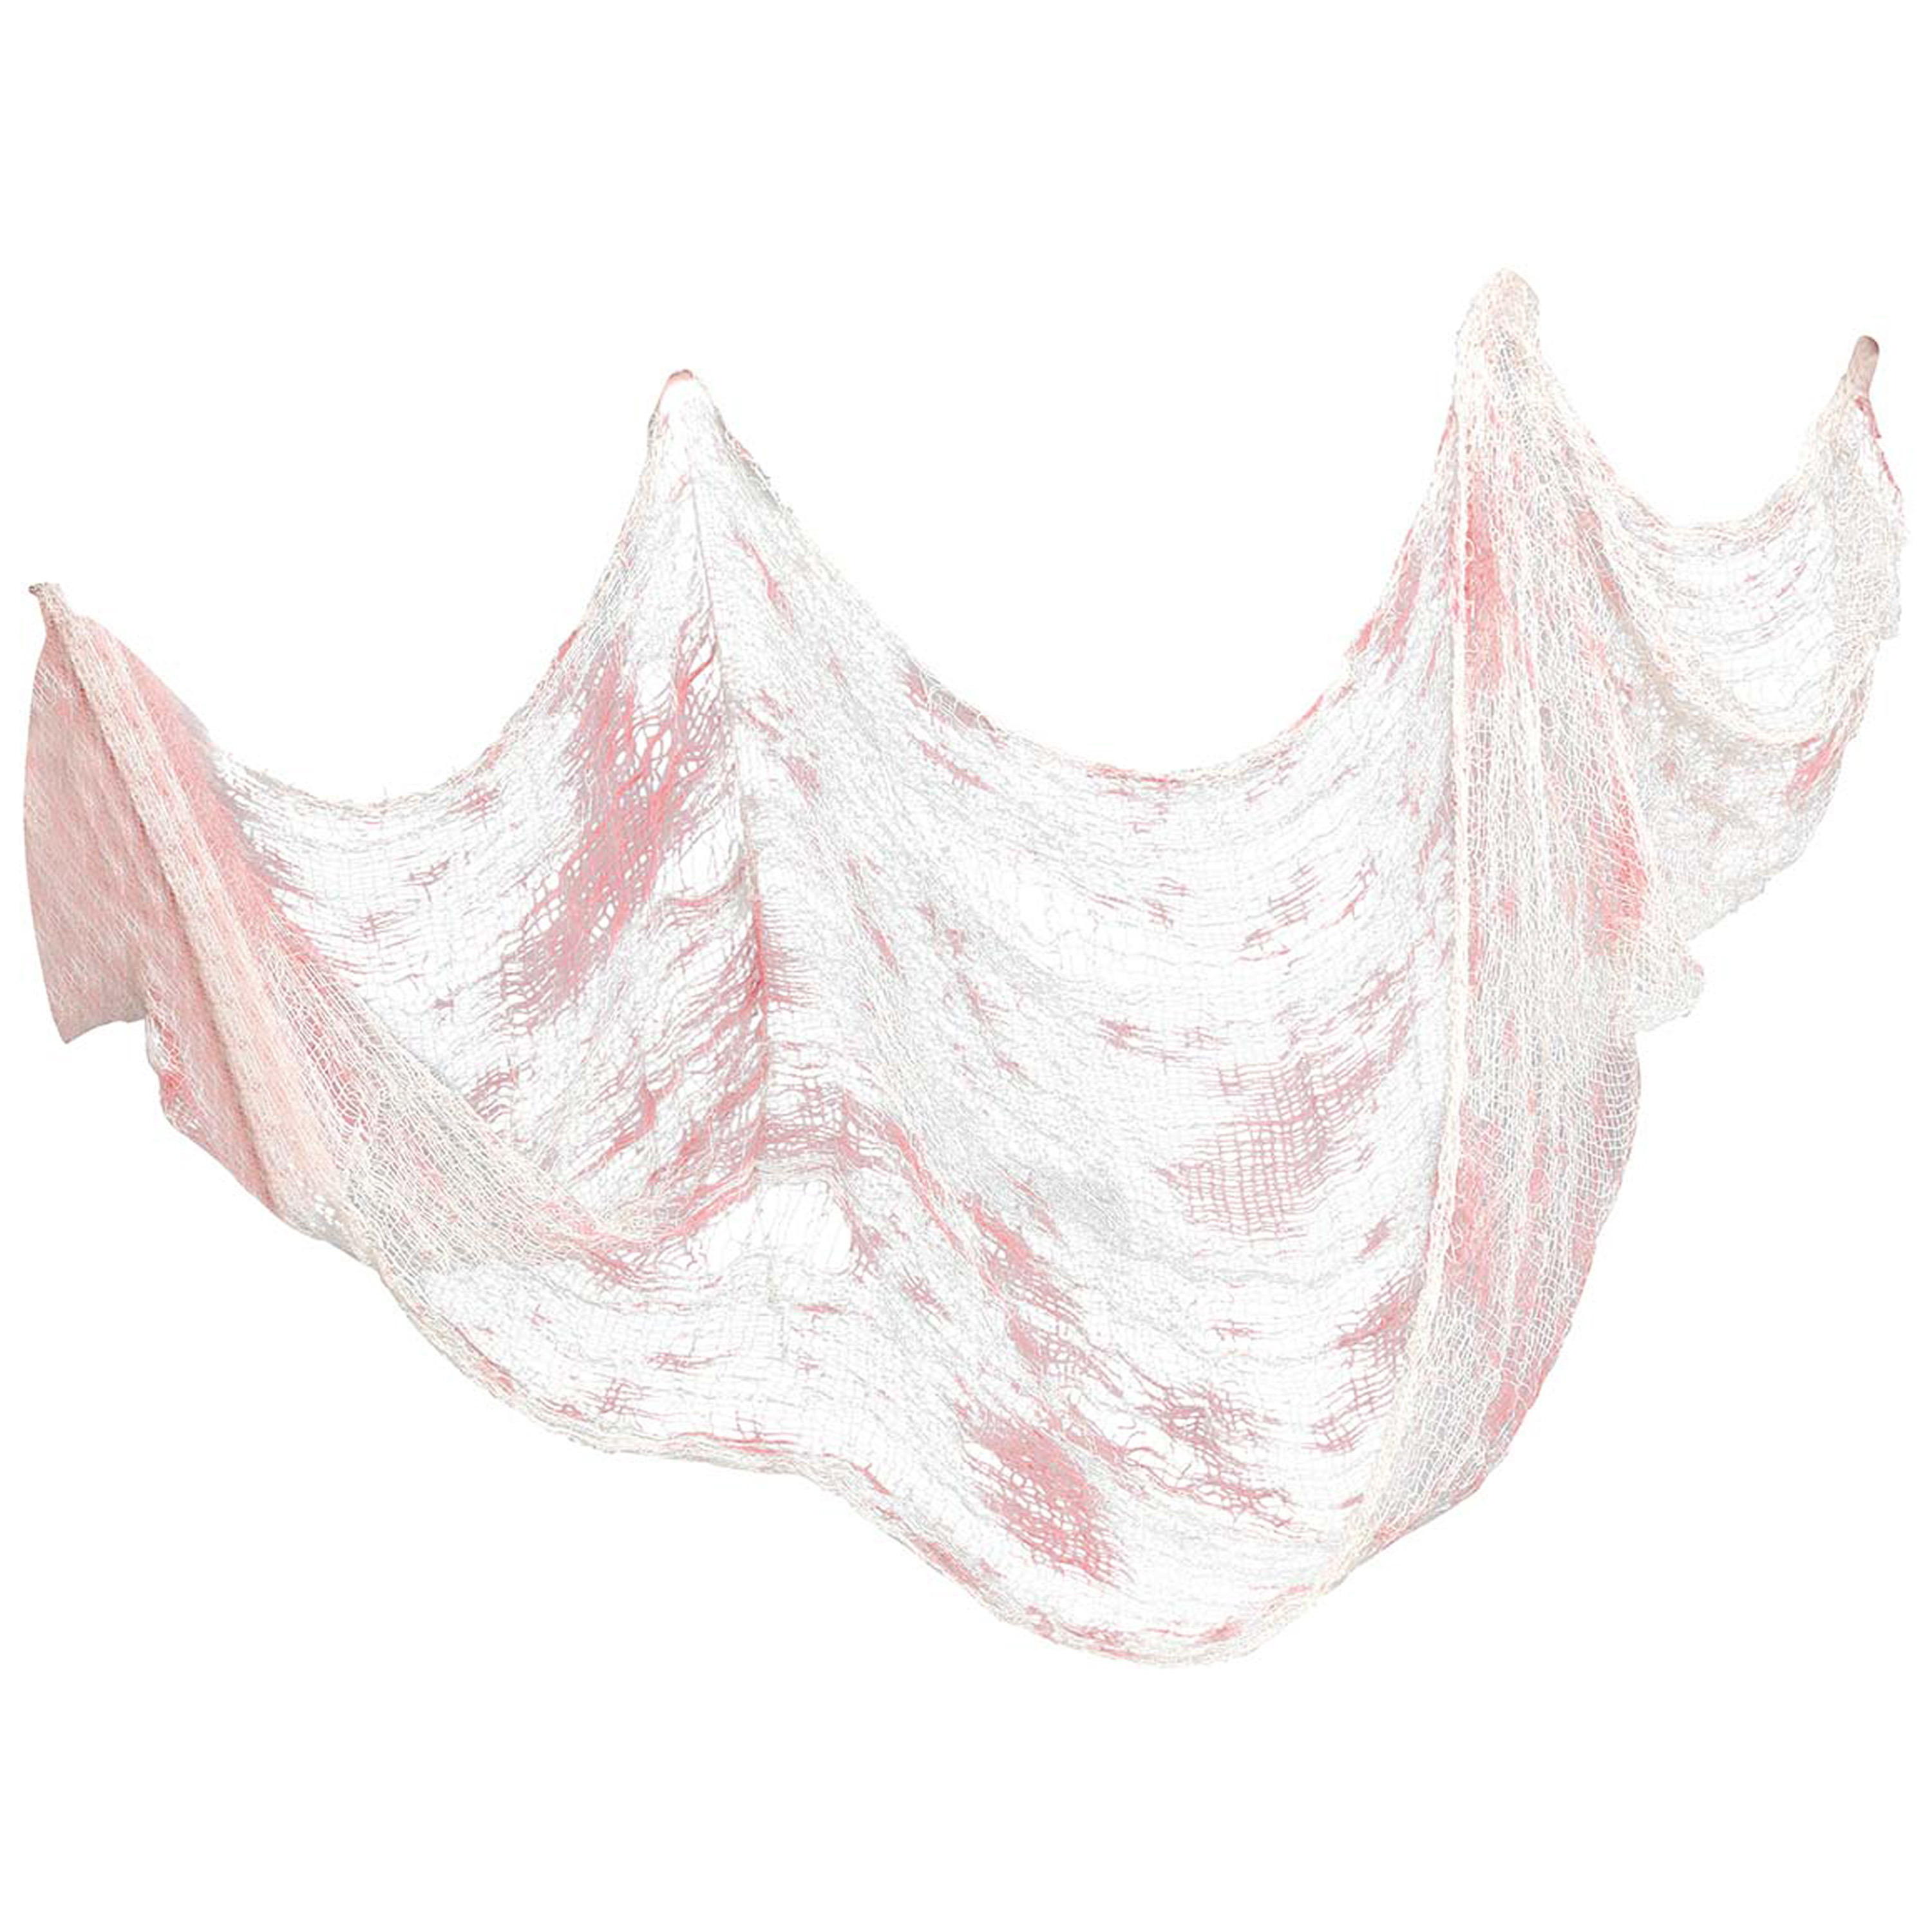 Horror-halloween deco wand-muur-plafond gordijn stof wit-bloed 76 x 228 cm griezel uitstraling